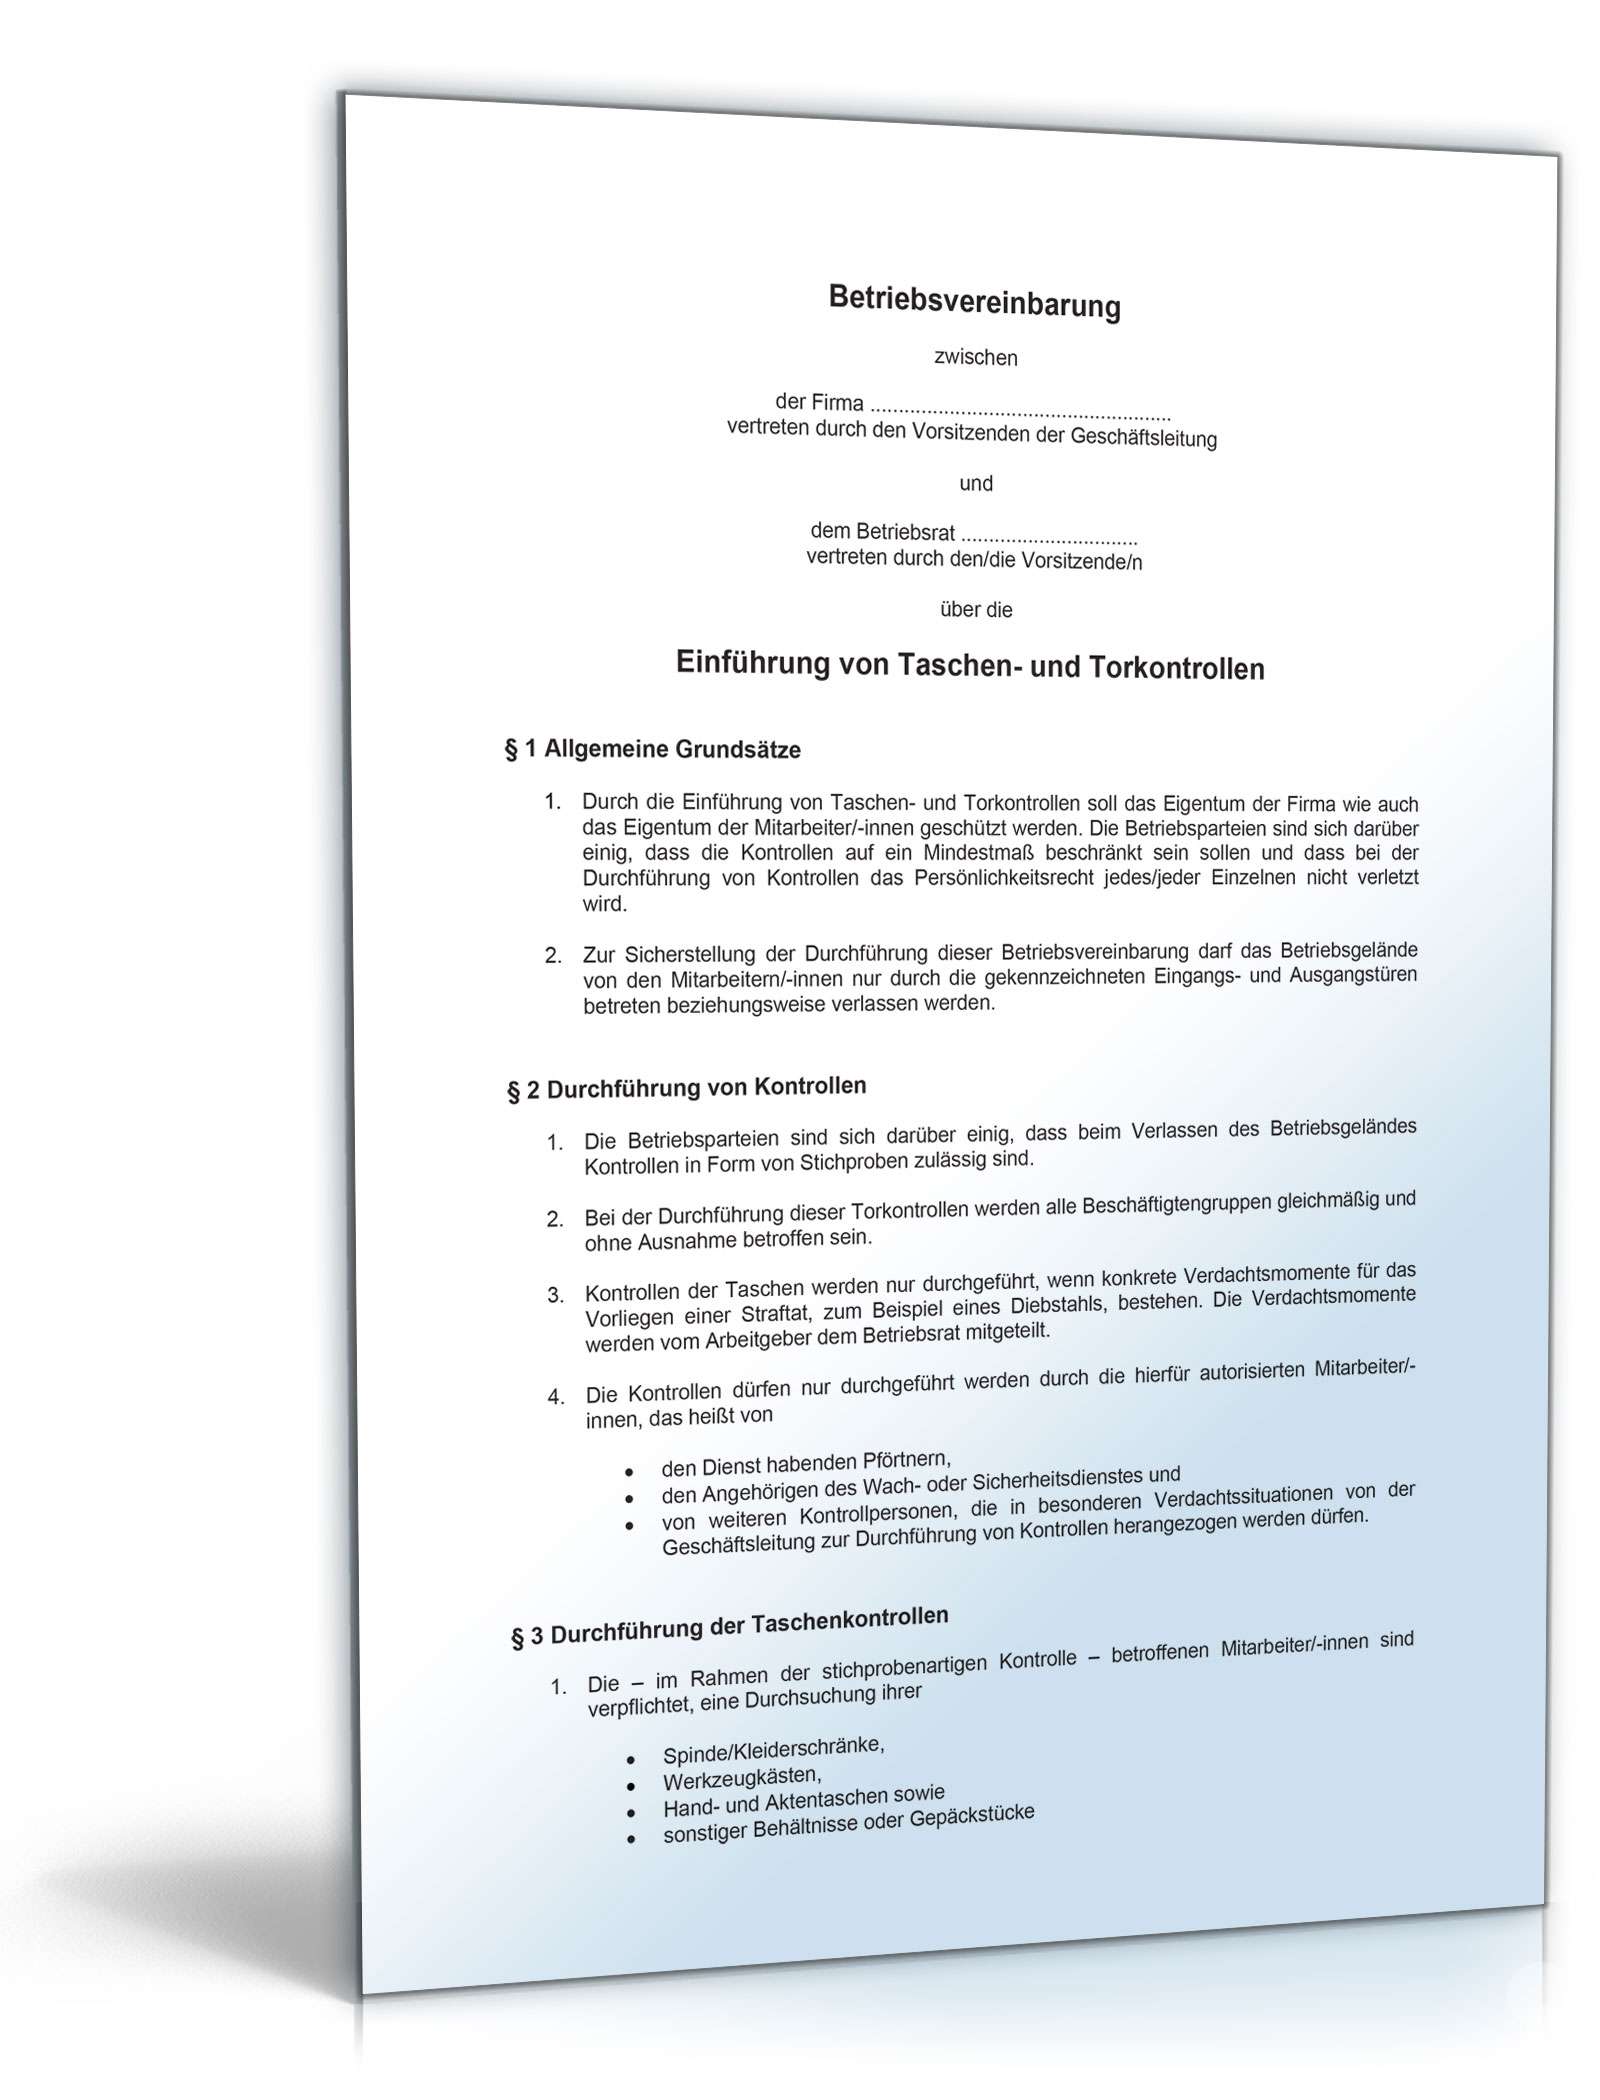 Hauptbild des Produkts: Betriebsvereinbarung über die Einführung von Taschen- und Torkontrollen